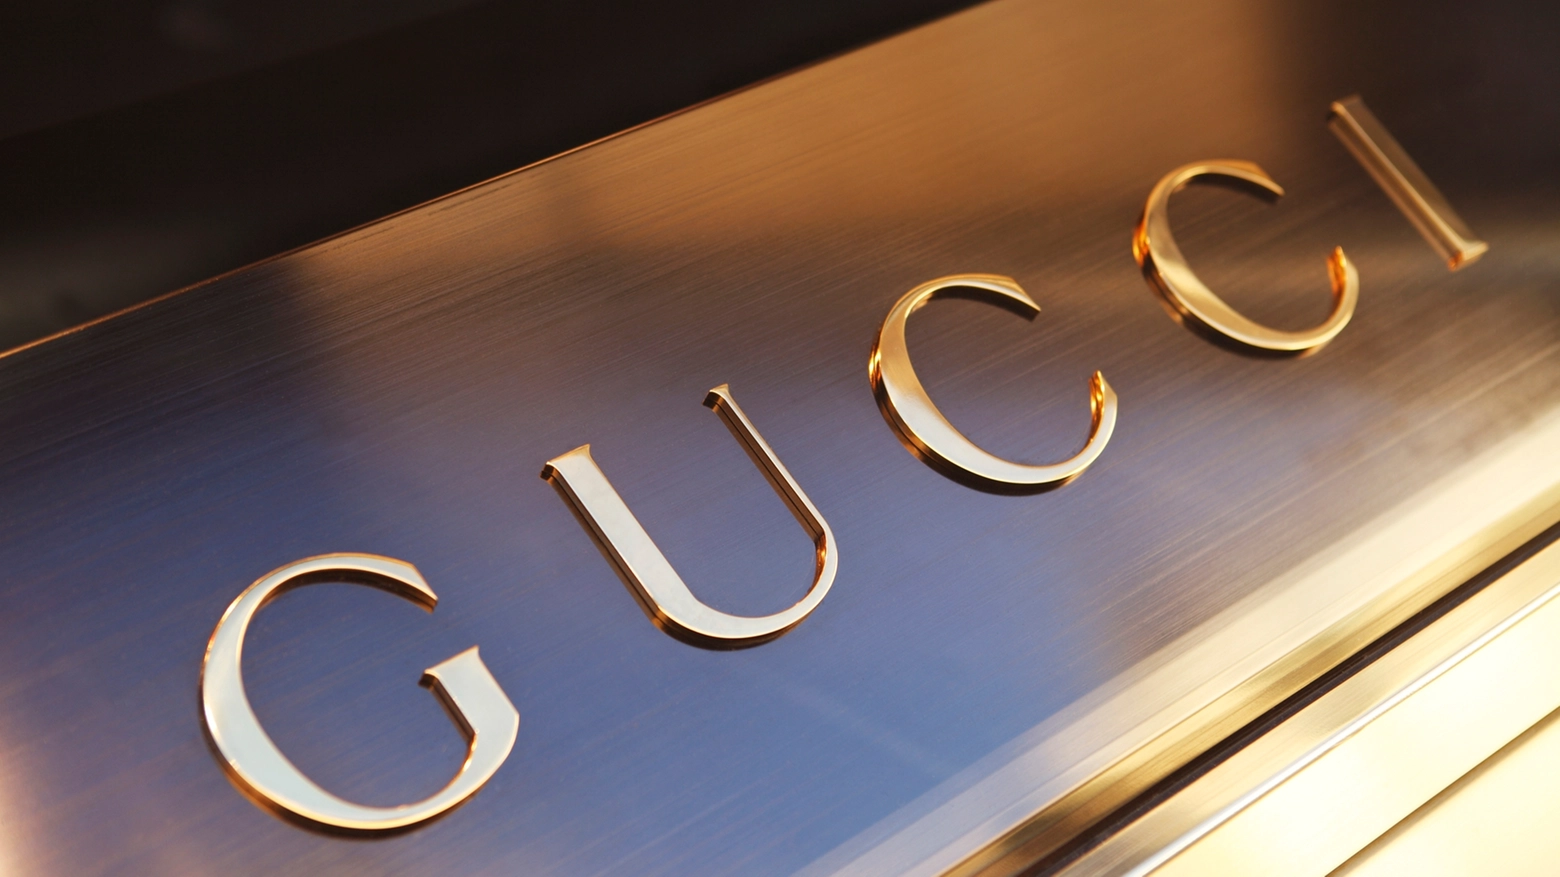 Gucci tra i brand più influenti al mondo - Crediti iStock Photo